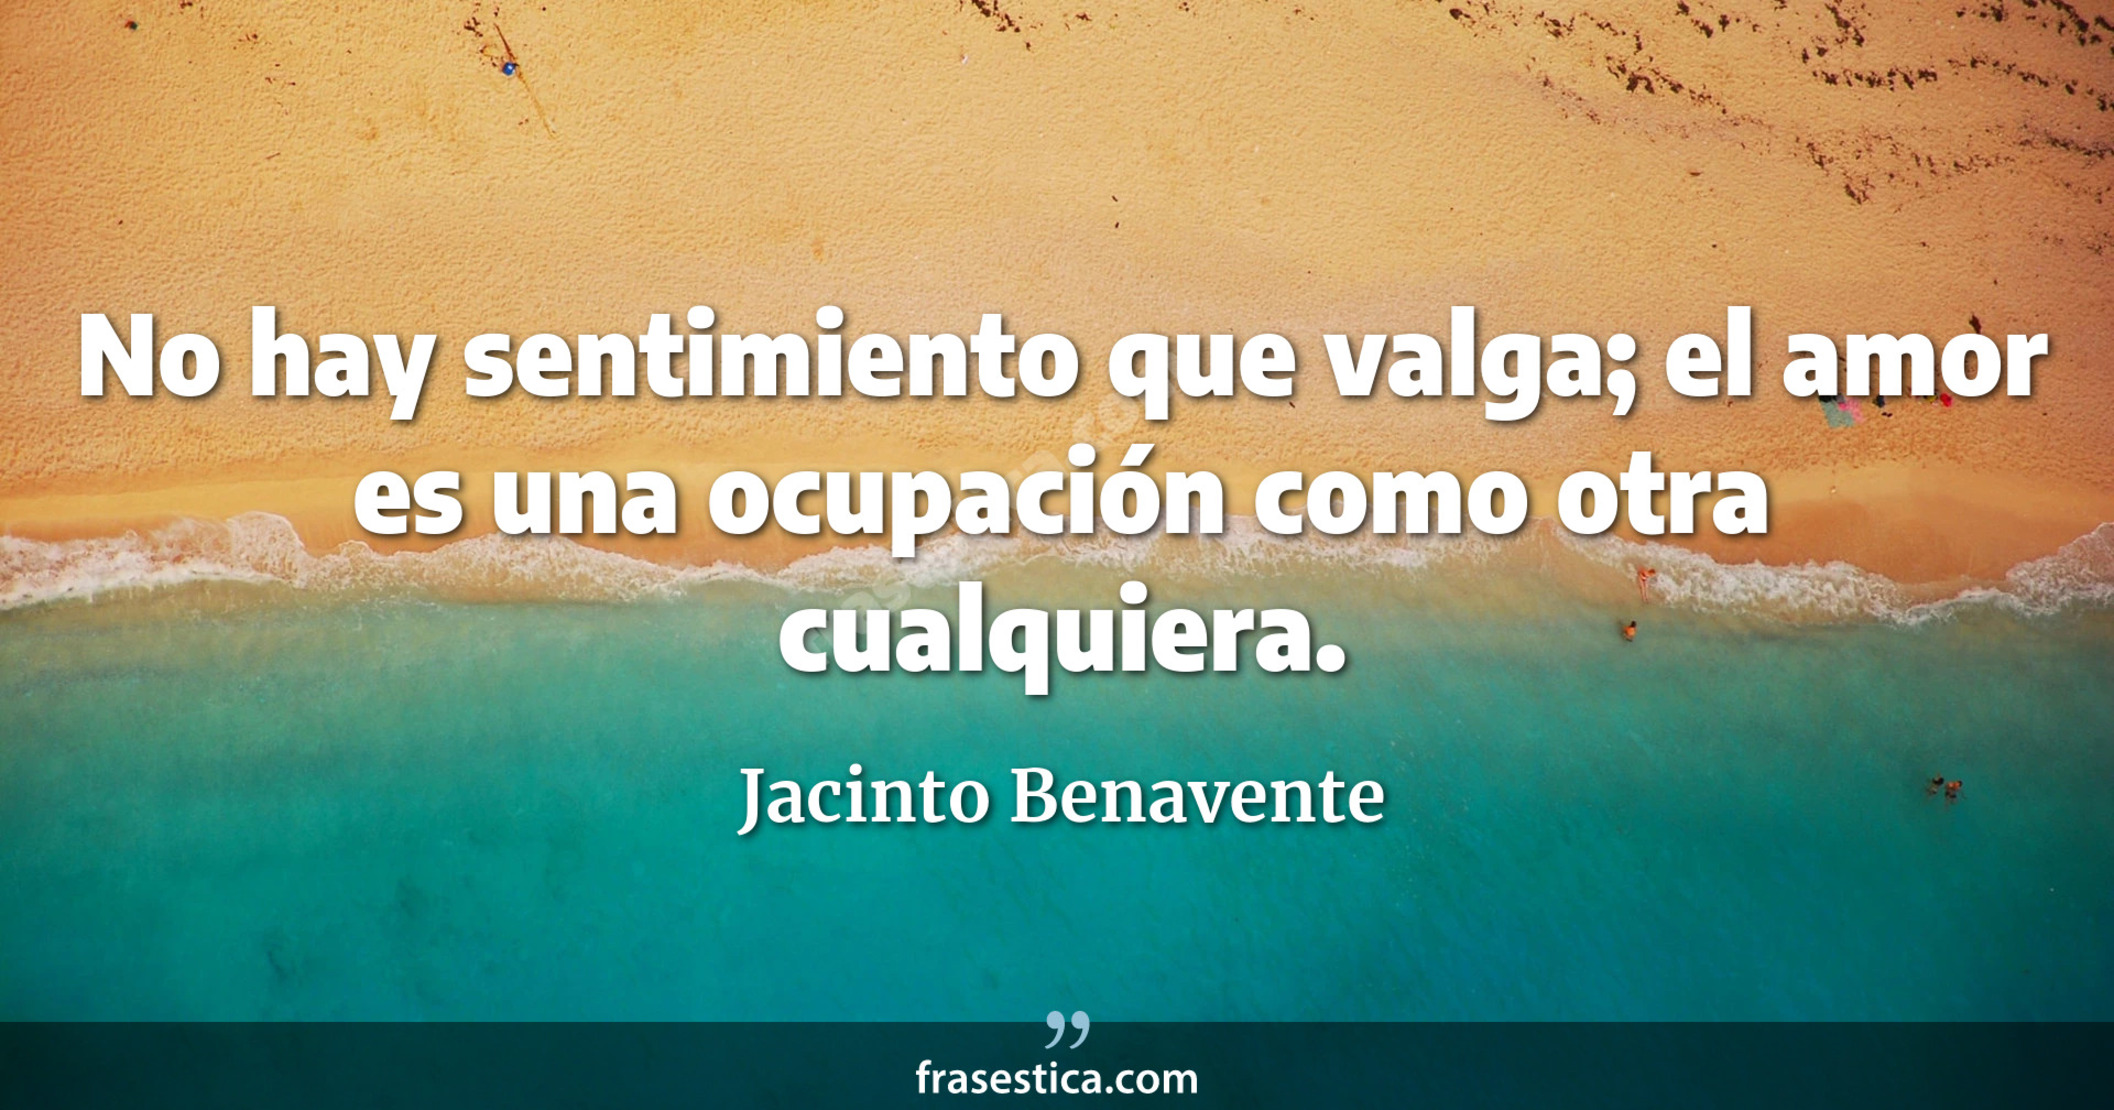 No hay sentimiento que valga; el amor es una ocupación como otra cualquiera. - Jacinto Benavente